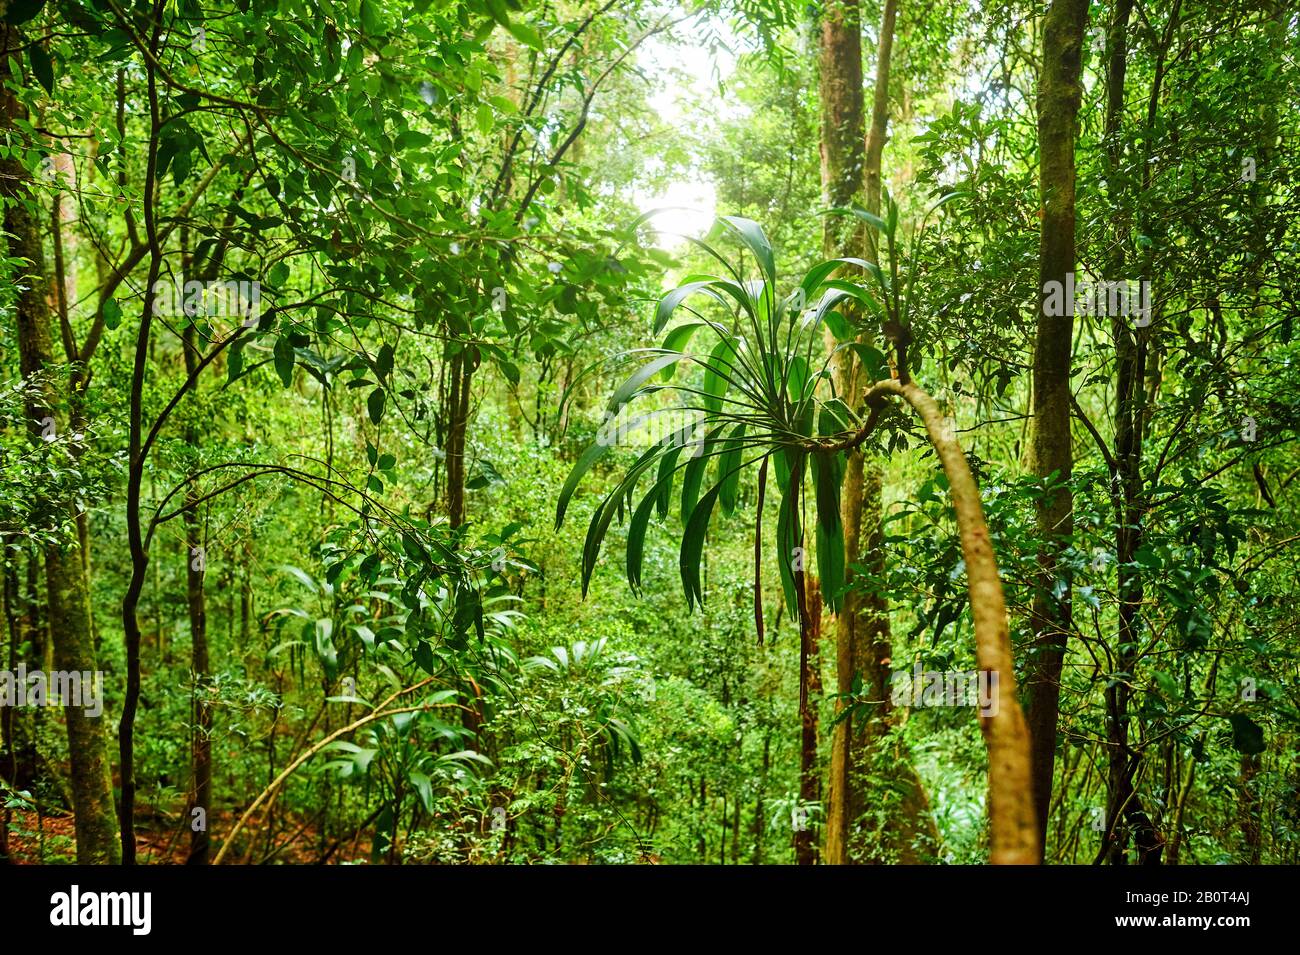 Pfad in einem Regenwald, Australien, Queensland, Lamington National Park Stockfoto